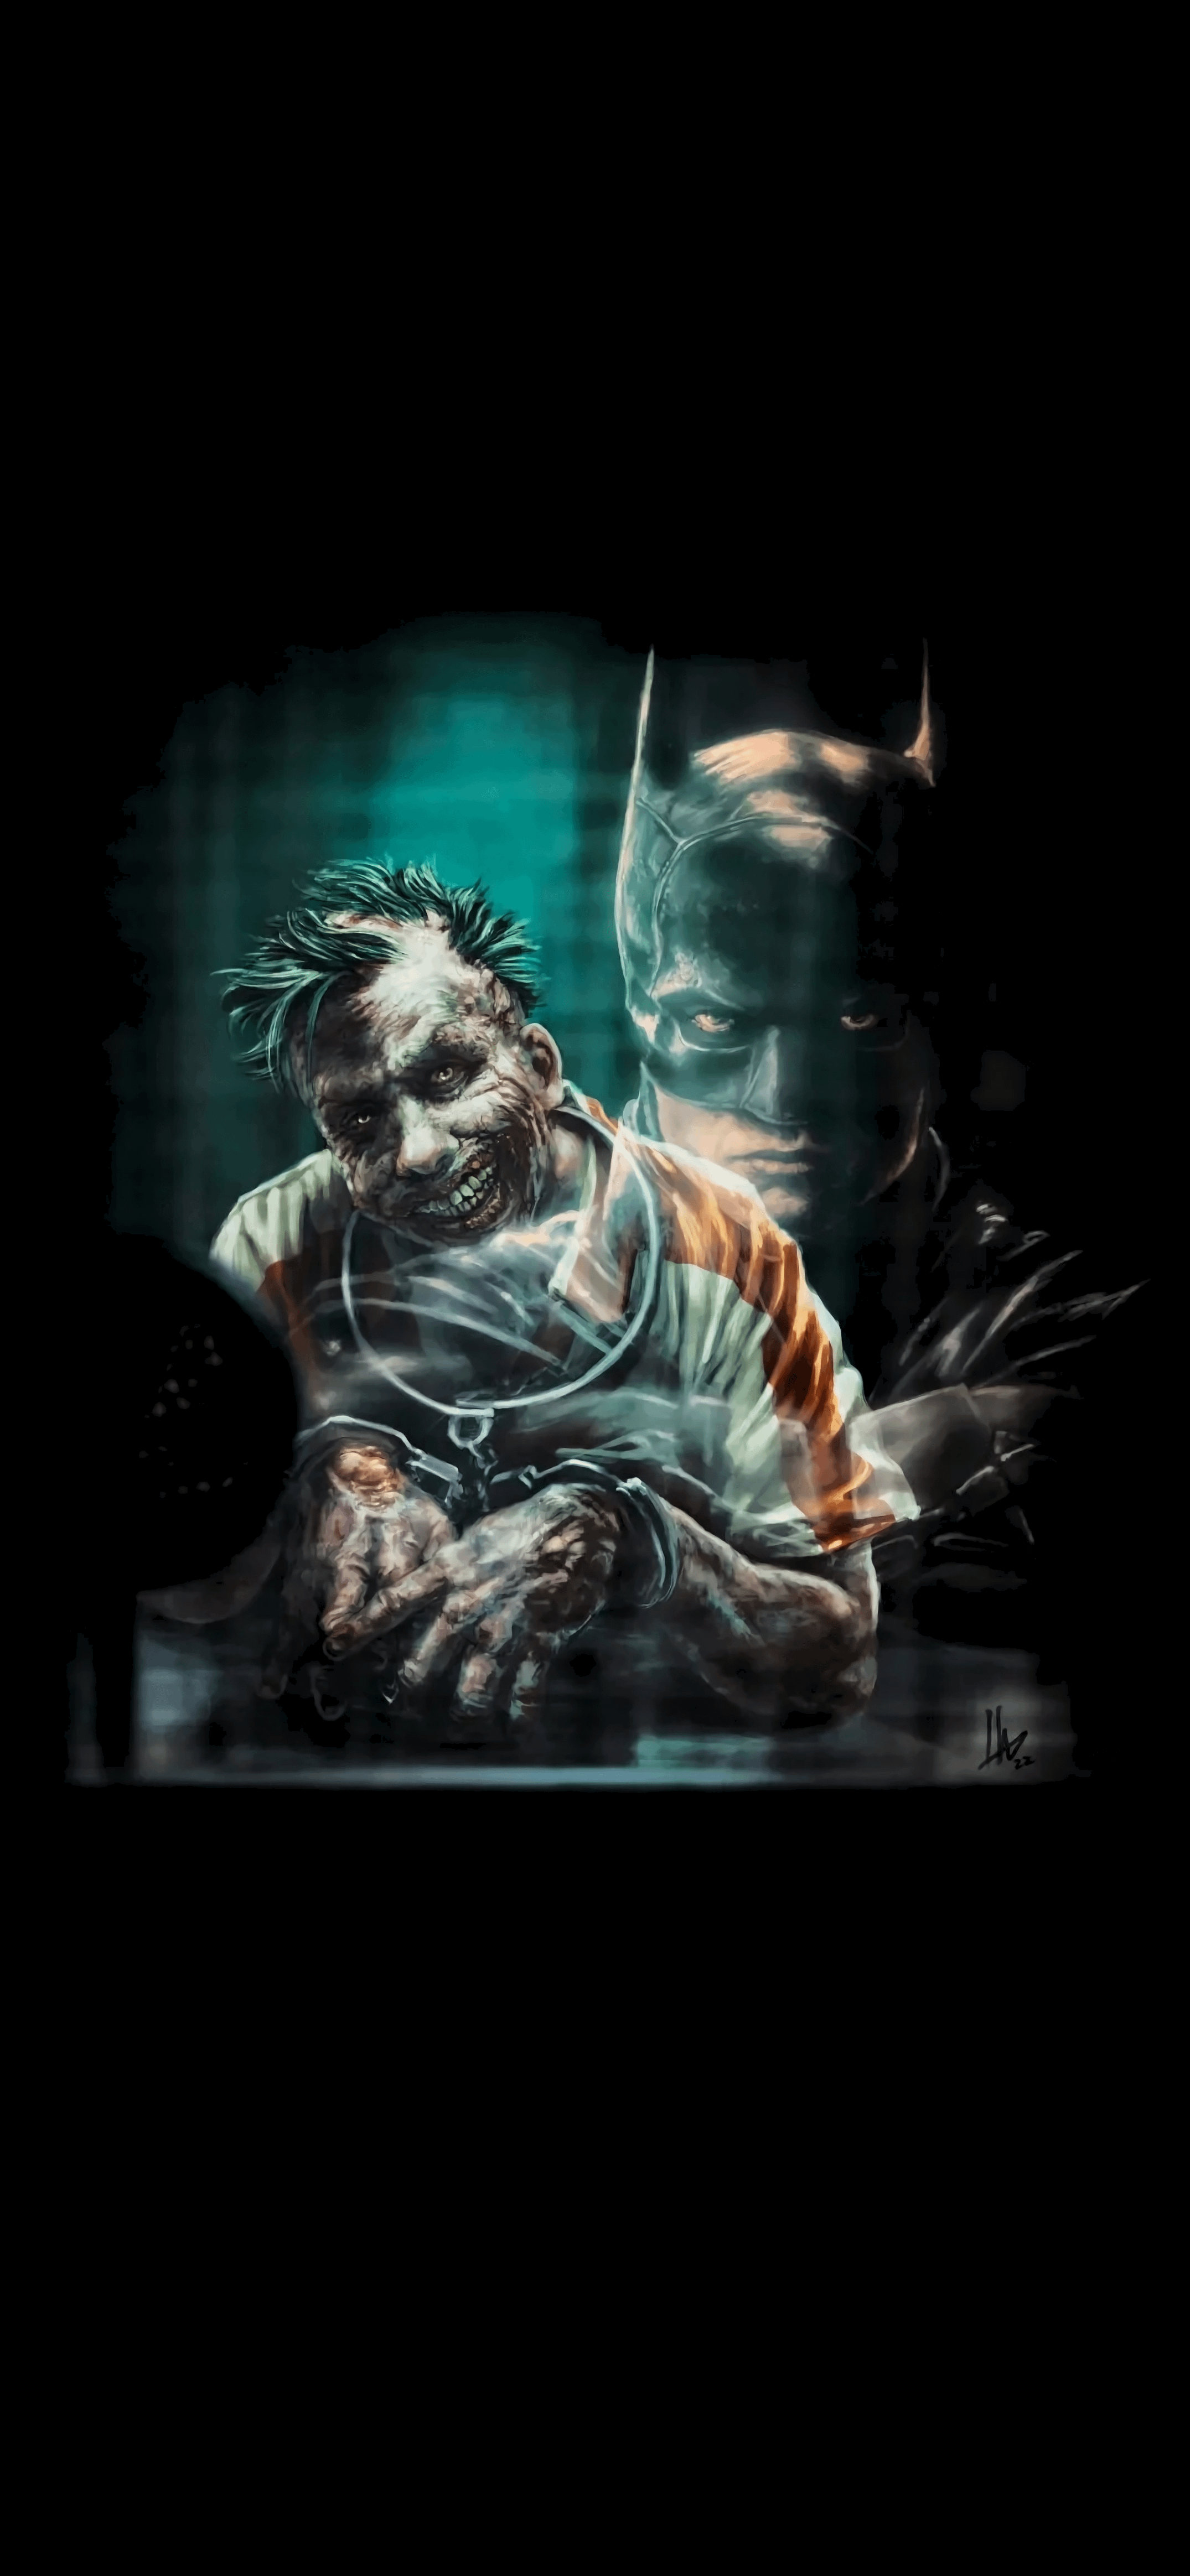 The Batman And Joker Wallpaper By Hugo Dourado R